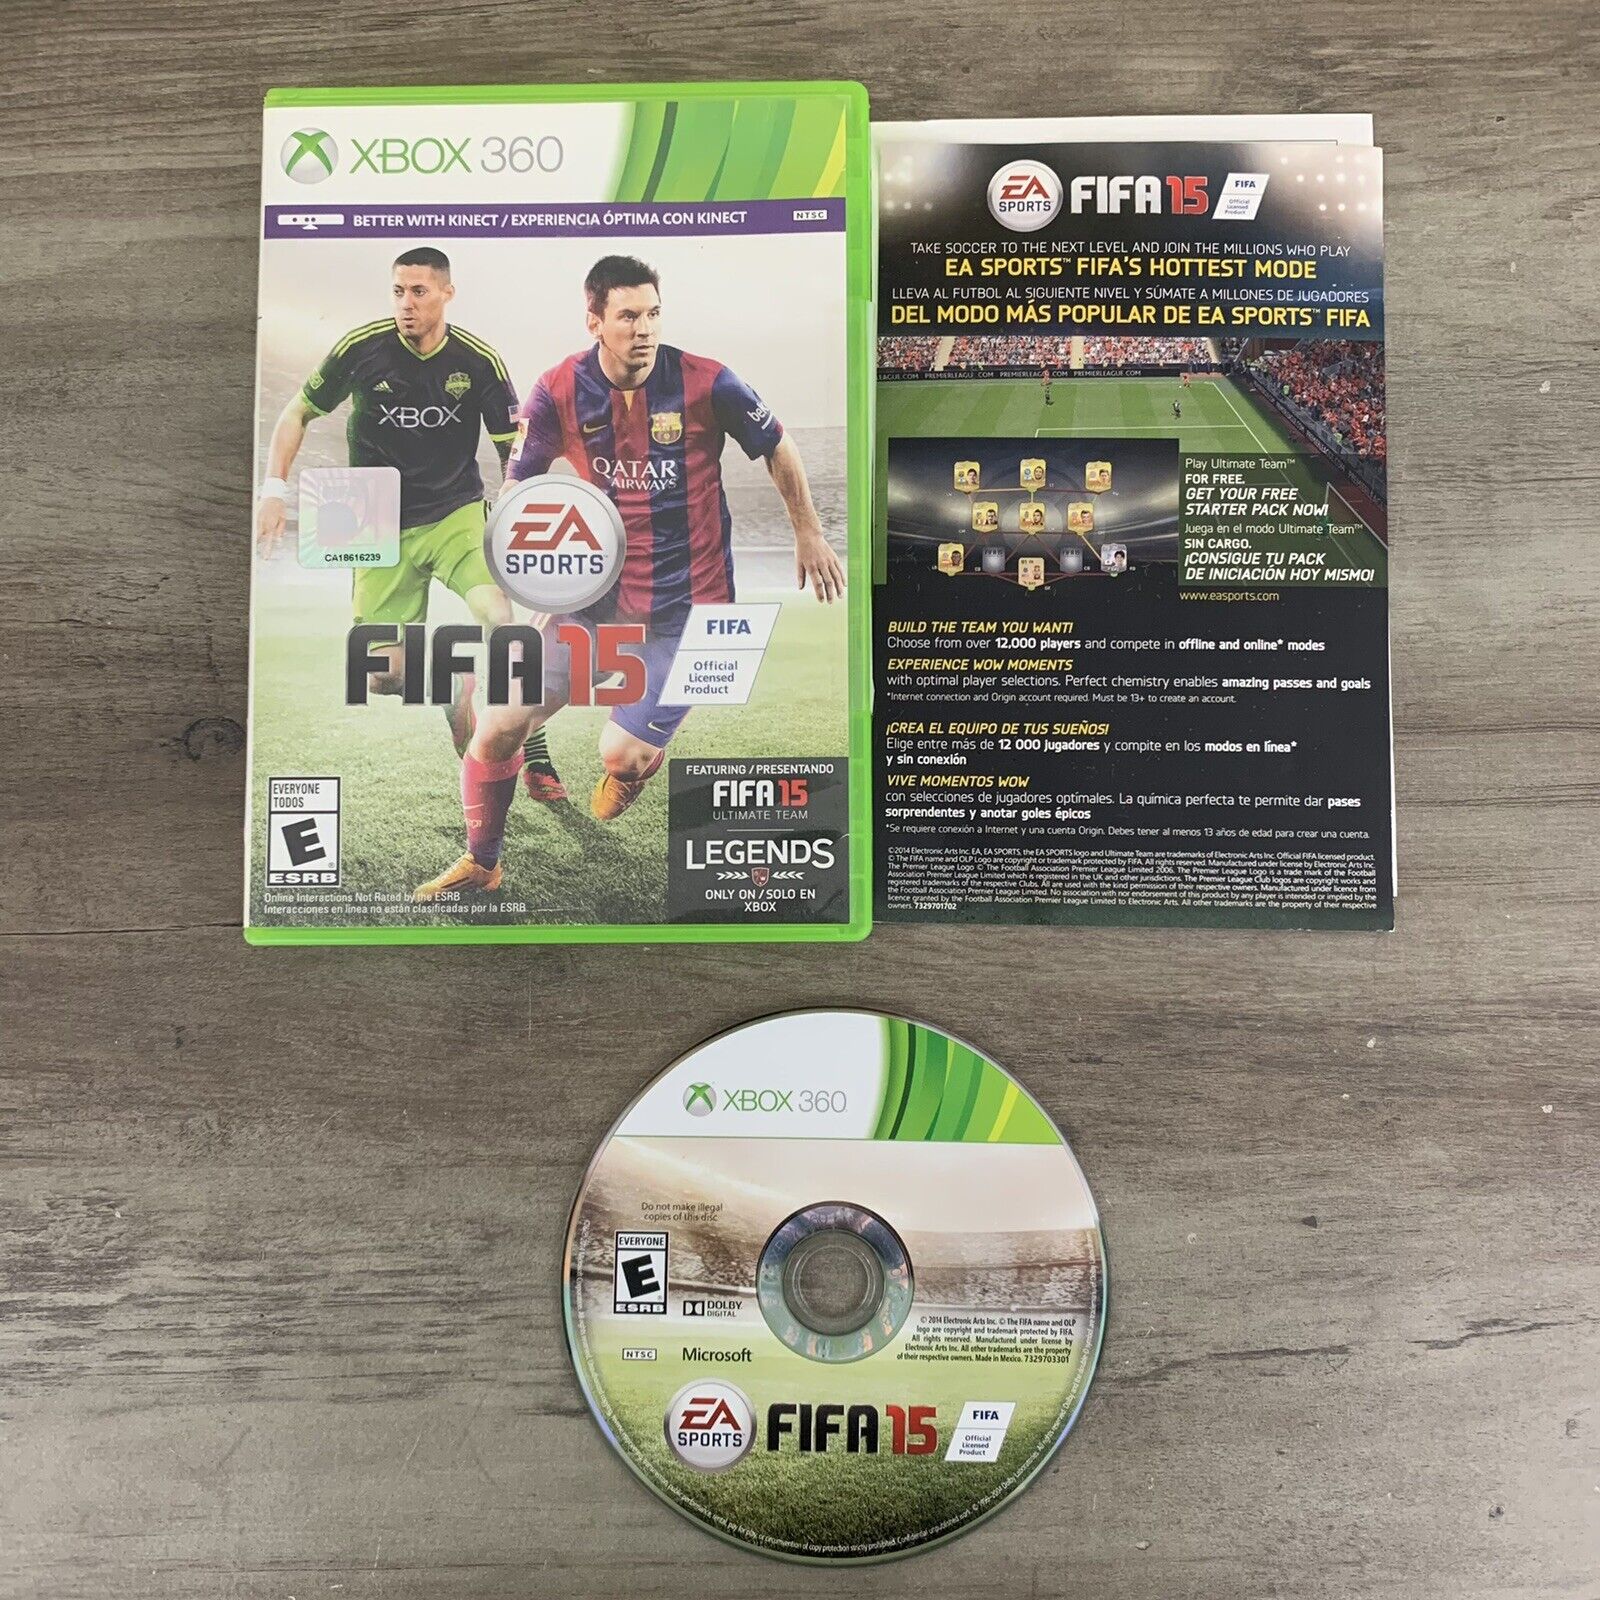 Blive skør Stikke ud menneskelige ressourcer FIFA 15 - Xbox 360 Game - w Inserts- Tested &amp; Works 14633368963 | eBay